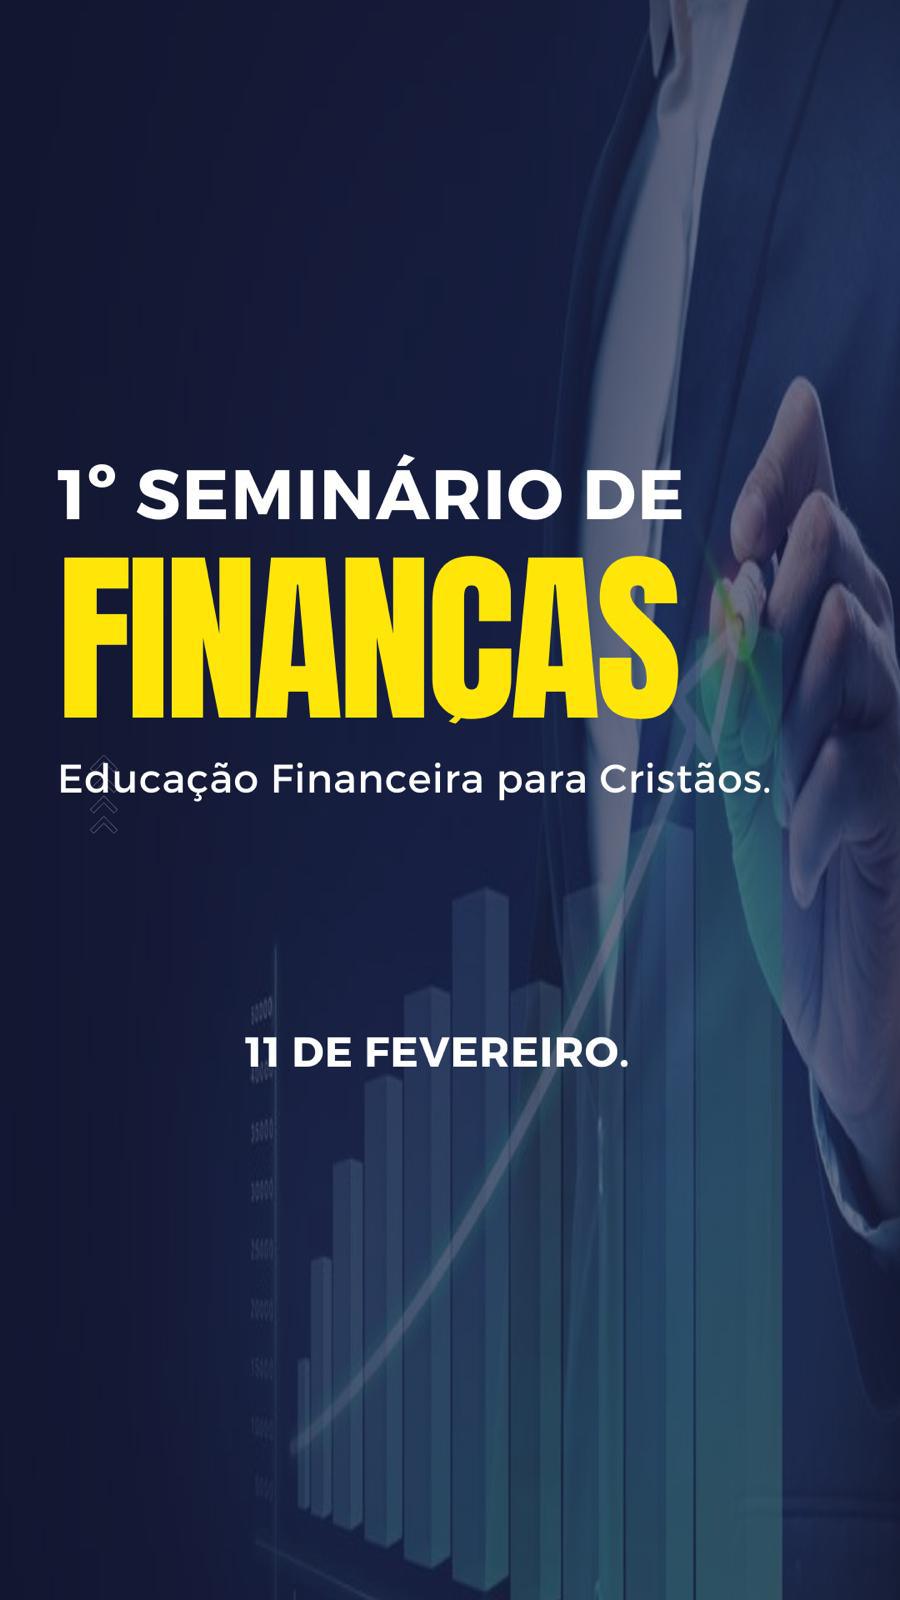 1º Seminário de Finanças 11 de fevereiro